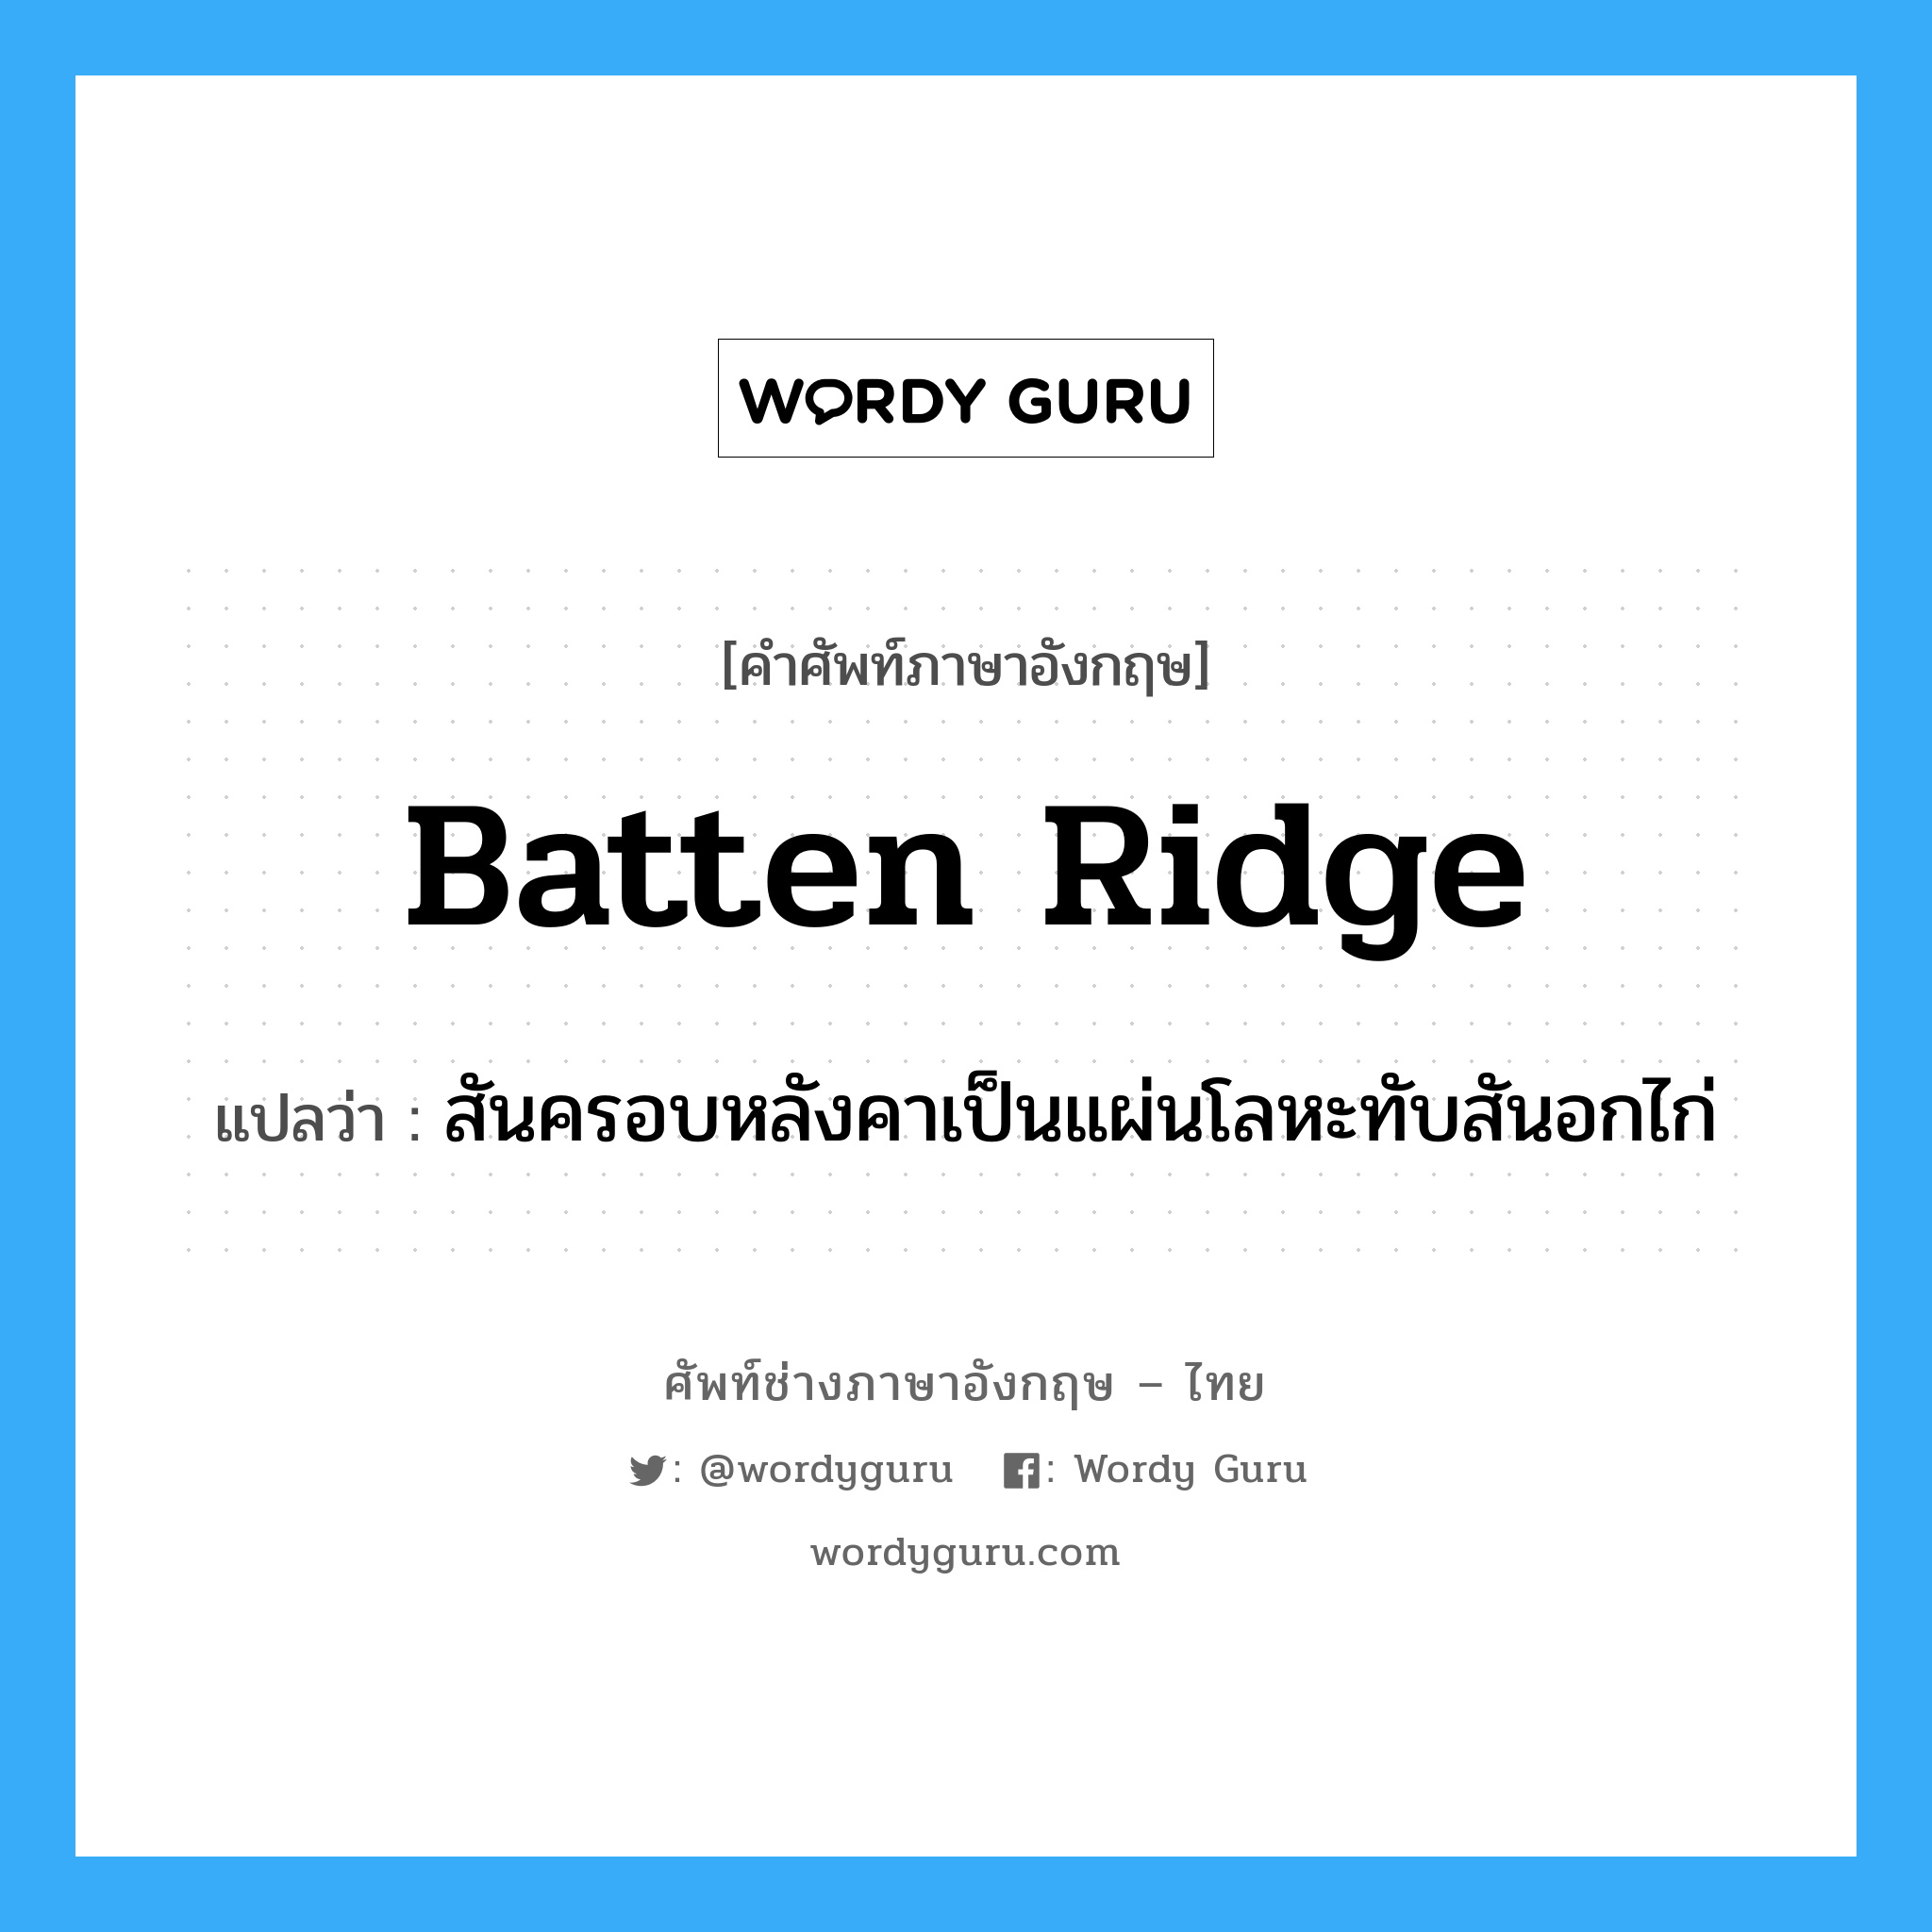 batten ridge แปลว่า?, คำศัพท์ช่างภาษาอังกฤษ - ไทย batten ridge คำศัพท์ภาษาอังกฤษ batten ridge แปลว่า สันครอบหลังคาเป็นแผ่นโลหะทับสันอกไก่